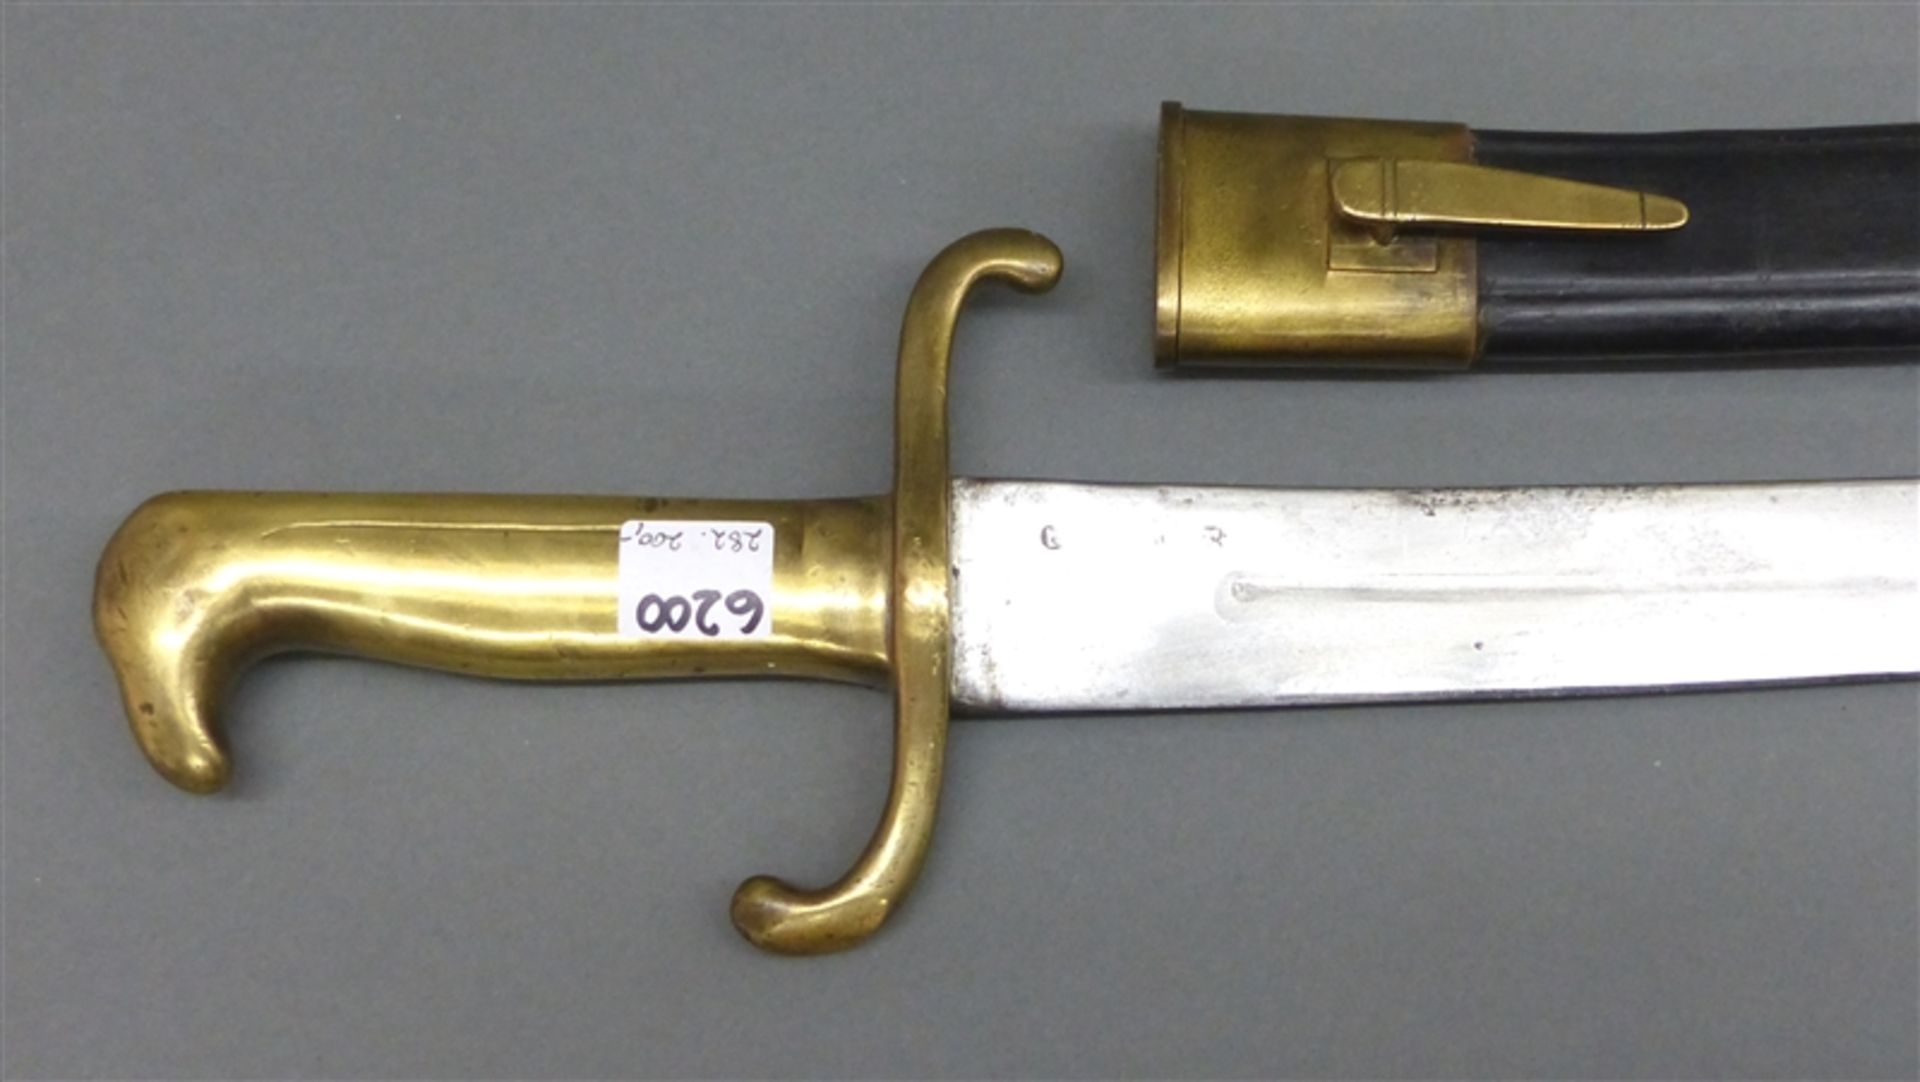 Faschinenmesser, 19. Jh. Messinggriff, Eisenklinge, Nr. Griff und Scheide 62.A.1.27, l 59 cm,